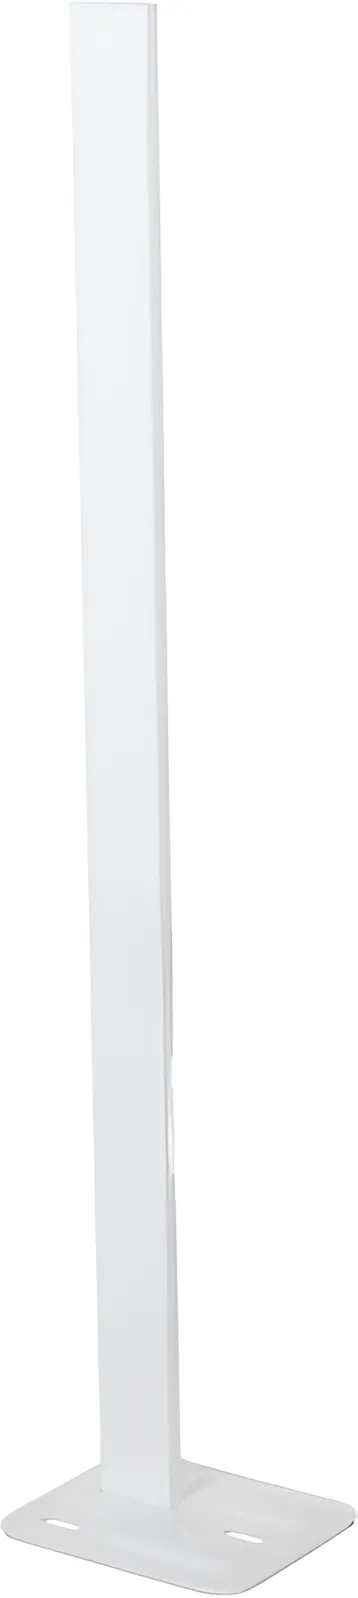 Кронштейн напольный Quinn Radiators 102450 H=700 мм (радиатор 400-700 мм) в интернет-магазине, главное фото